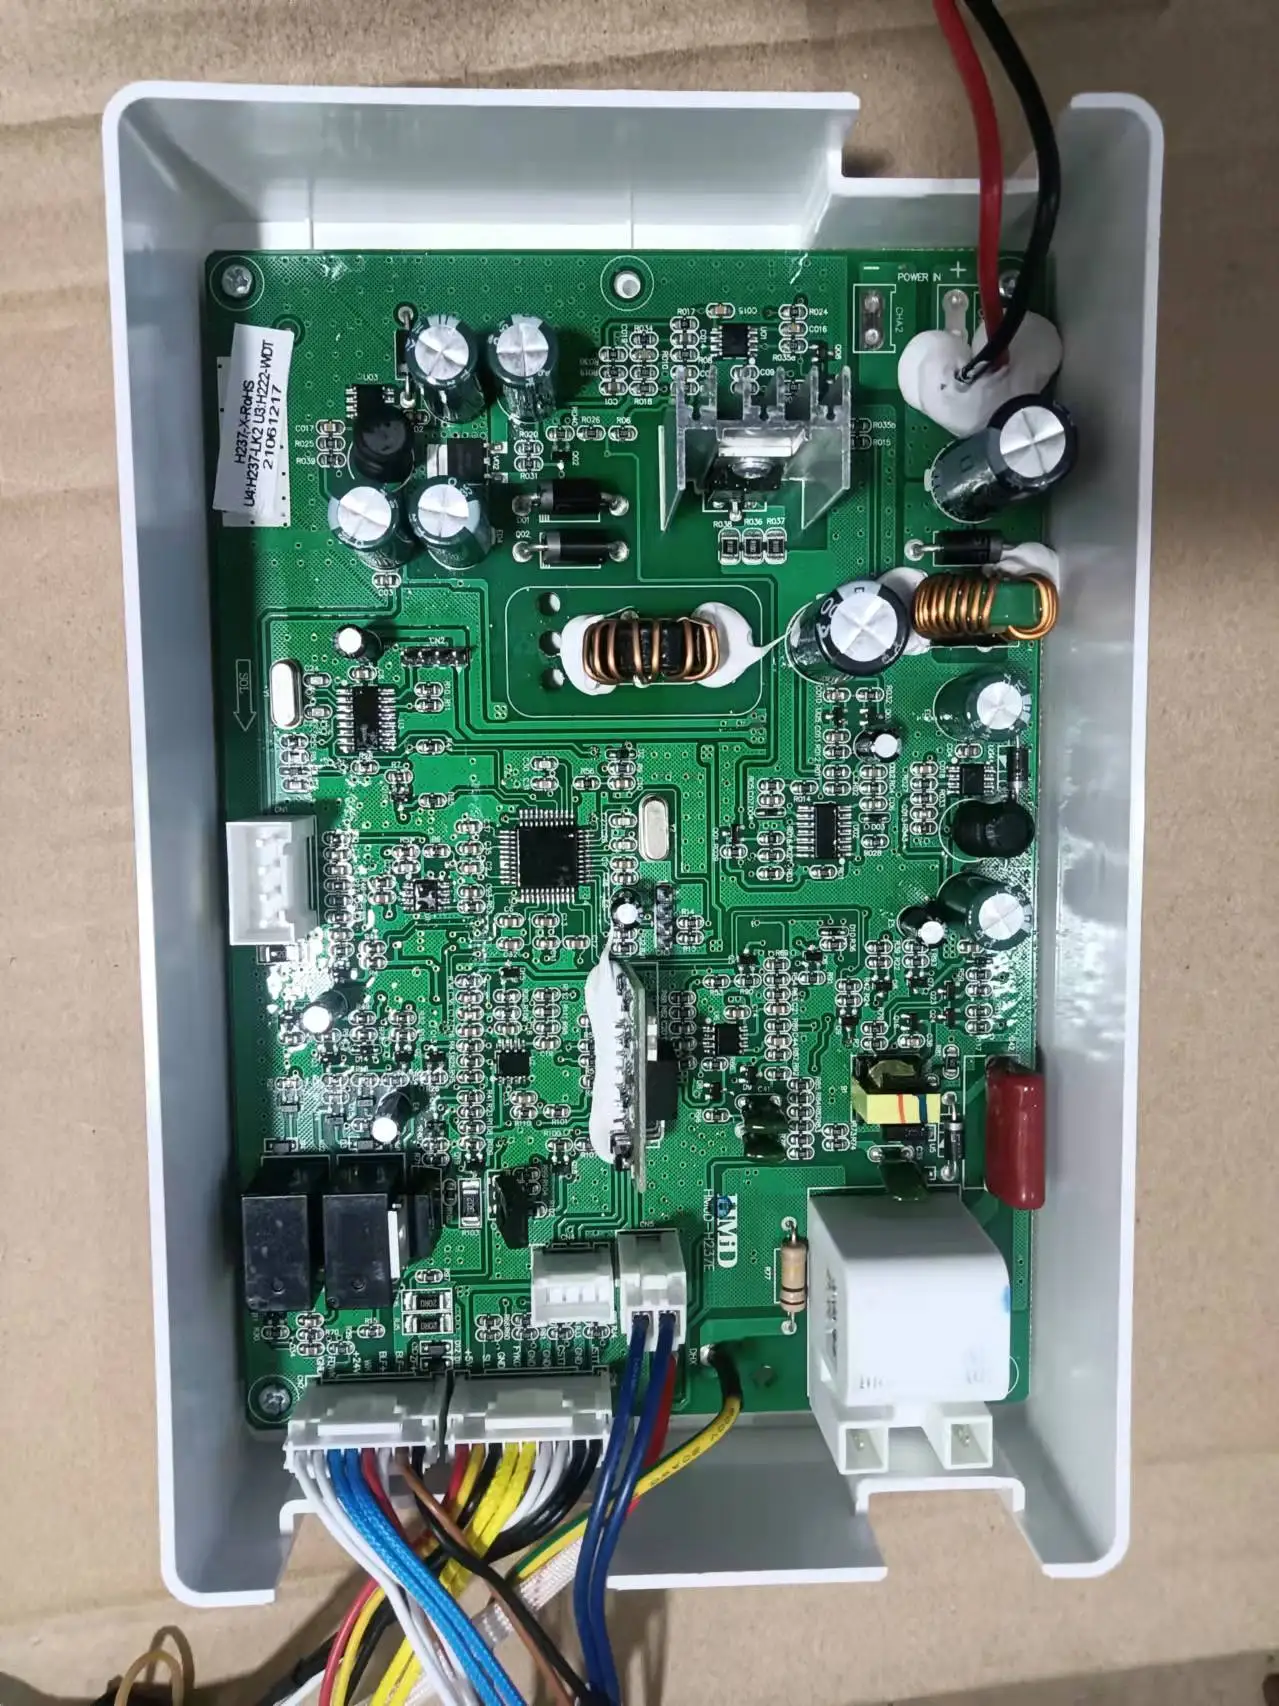 

Контроллер материнской платы HMD HMJD-H237E, компьютерная плата 2.01.11.0080